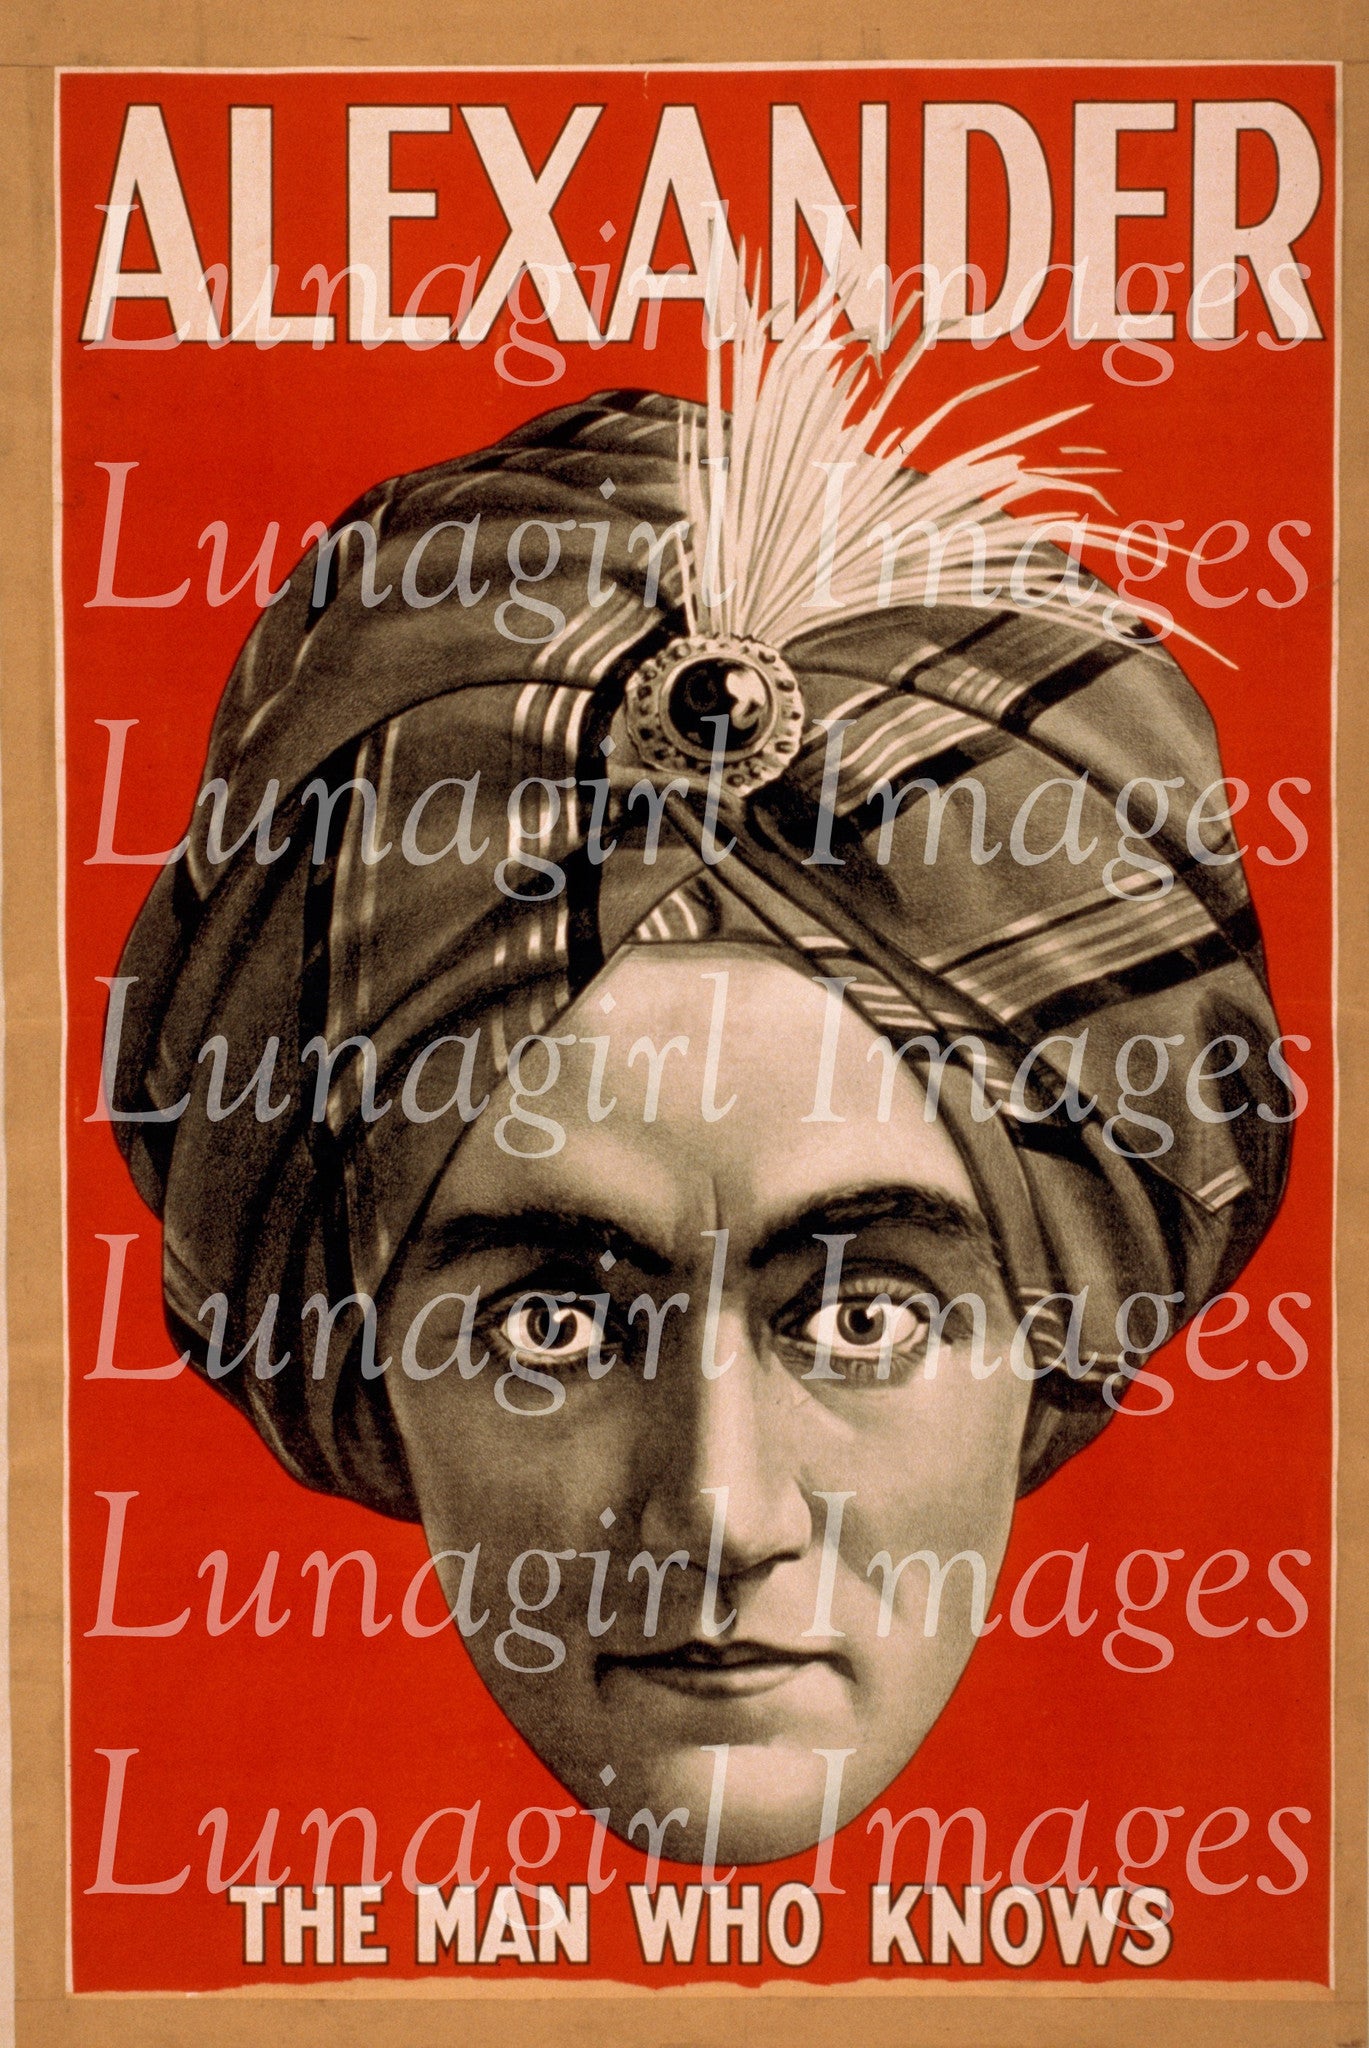 Magicians Download Pack : 5 Large Poster Digital Images - Lunagirl